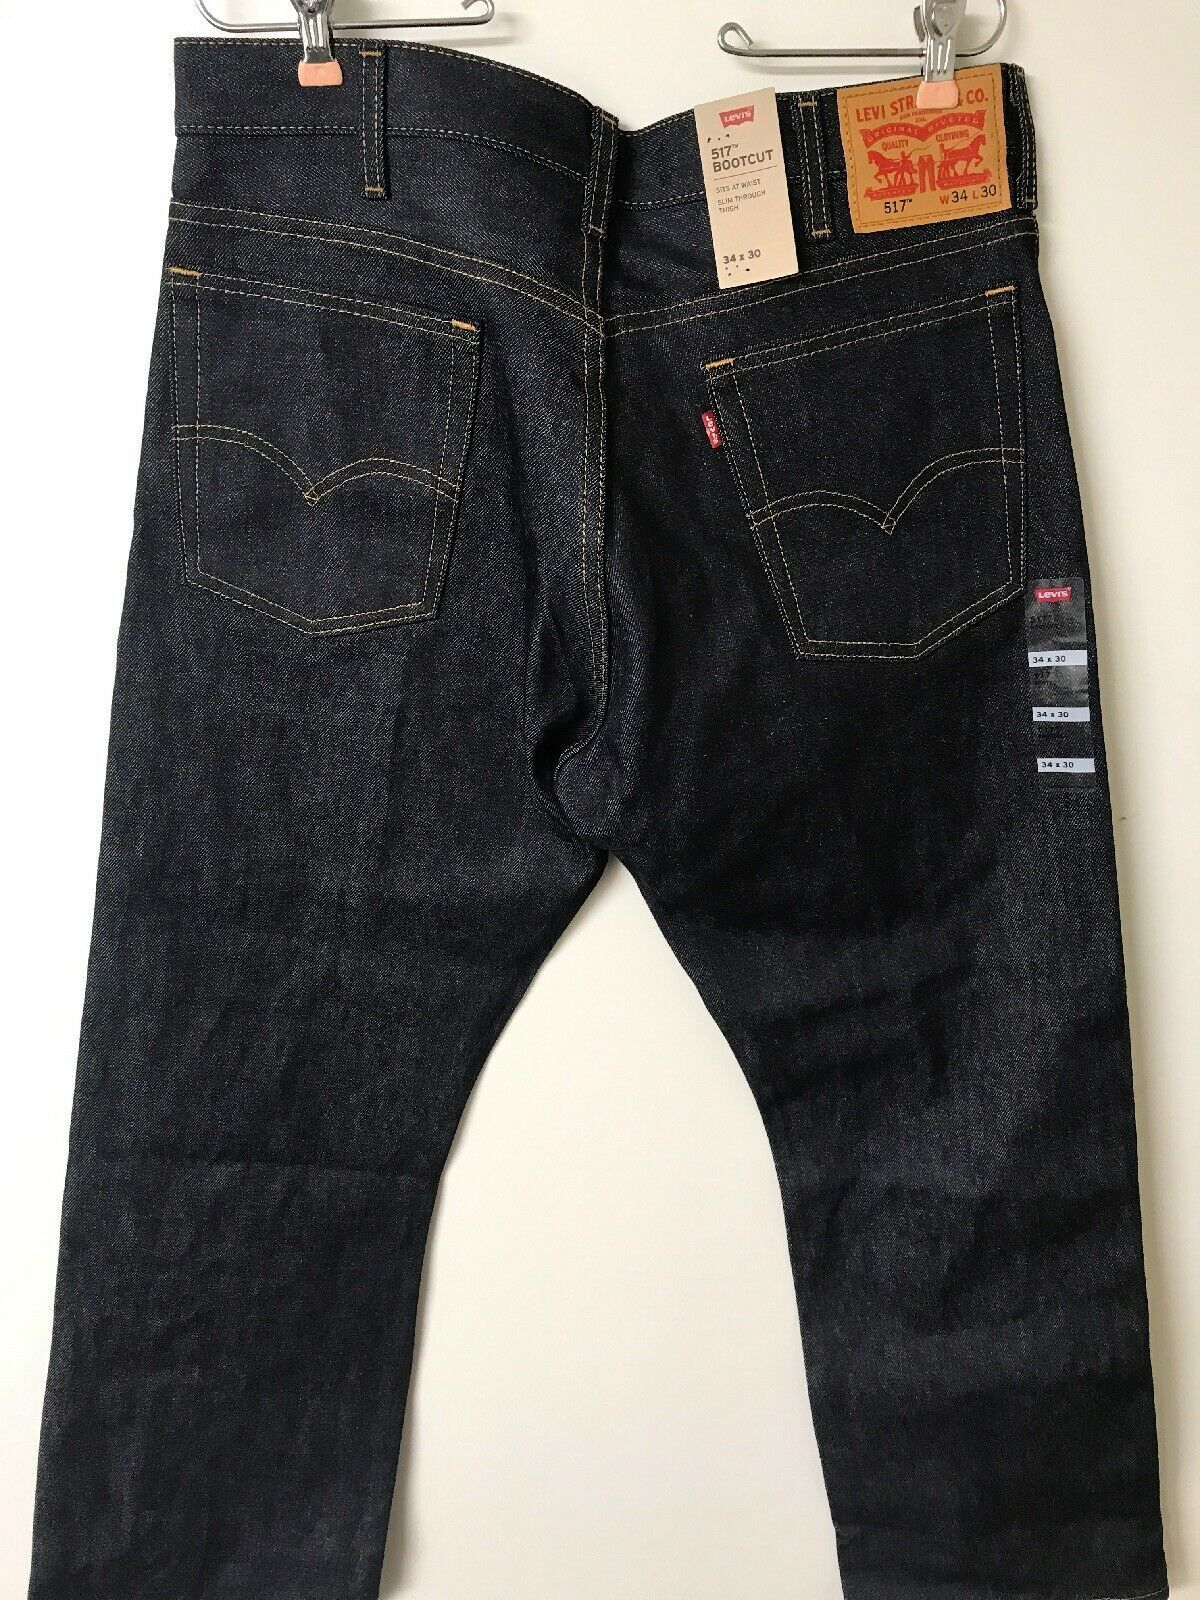 Levi’s Men’s 517 Boot Cut Jean, Rigid, 34W x 30L - Jeans